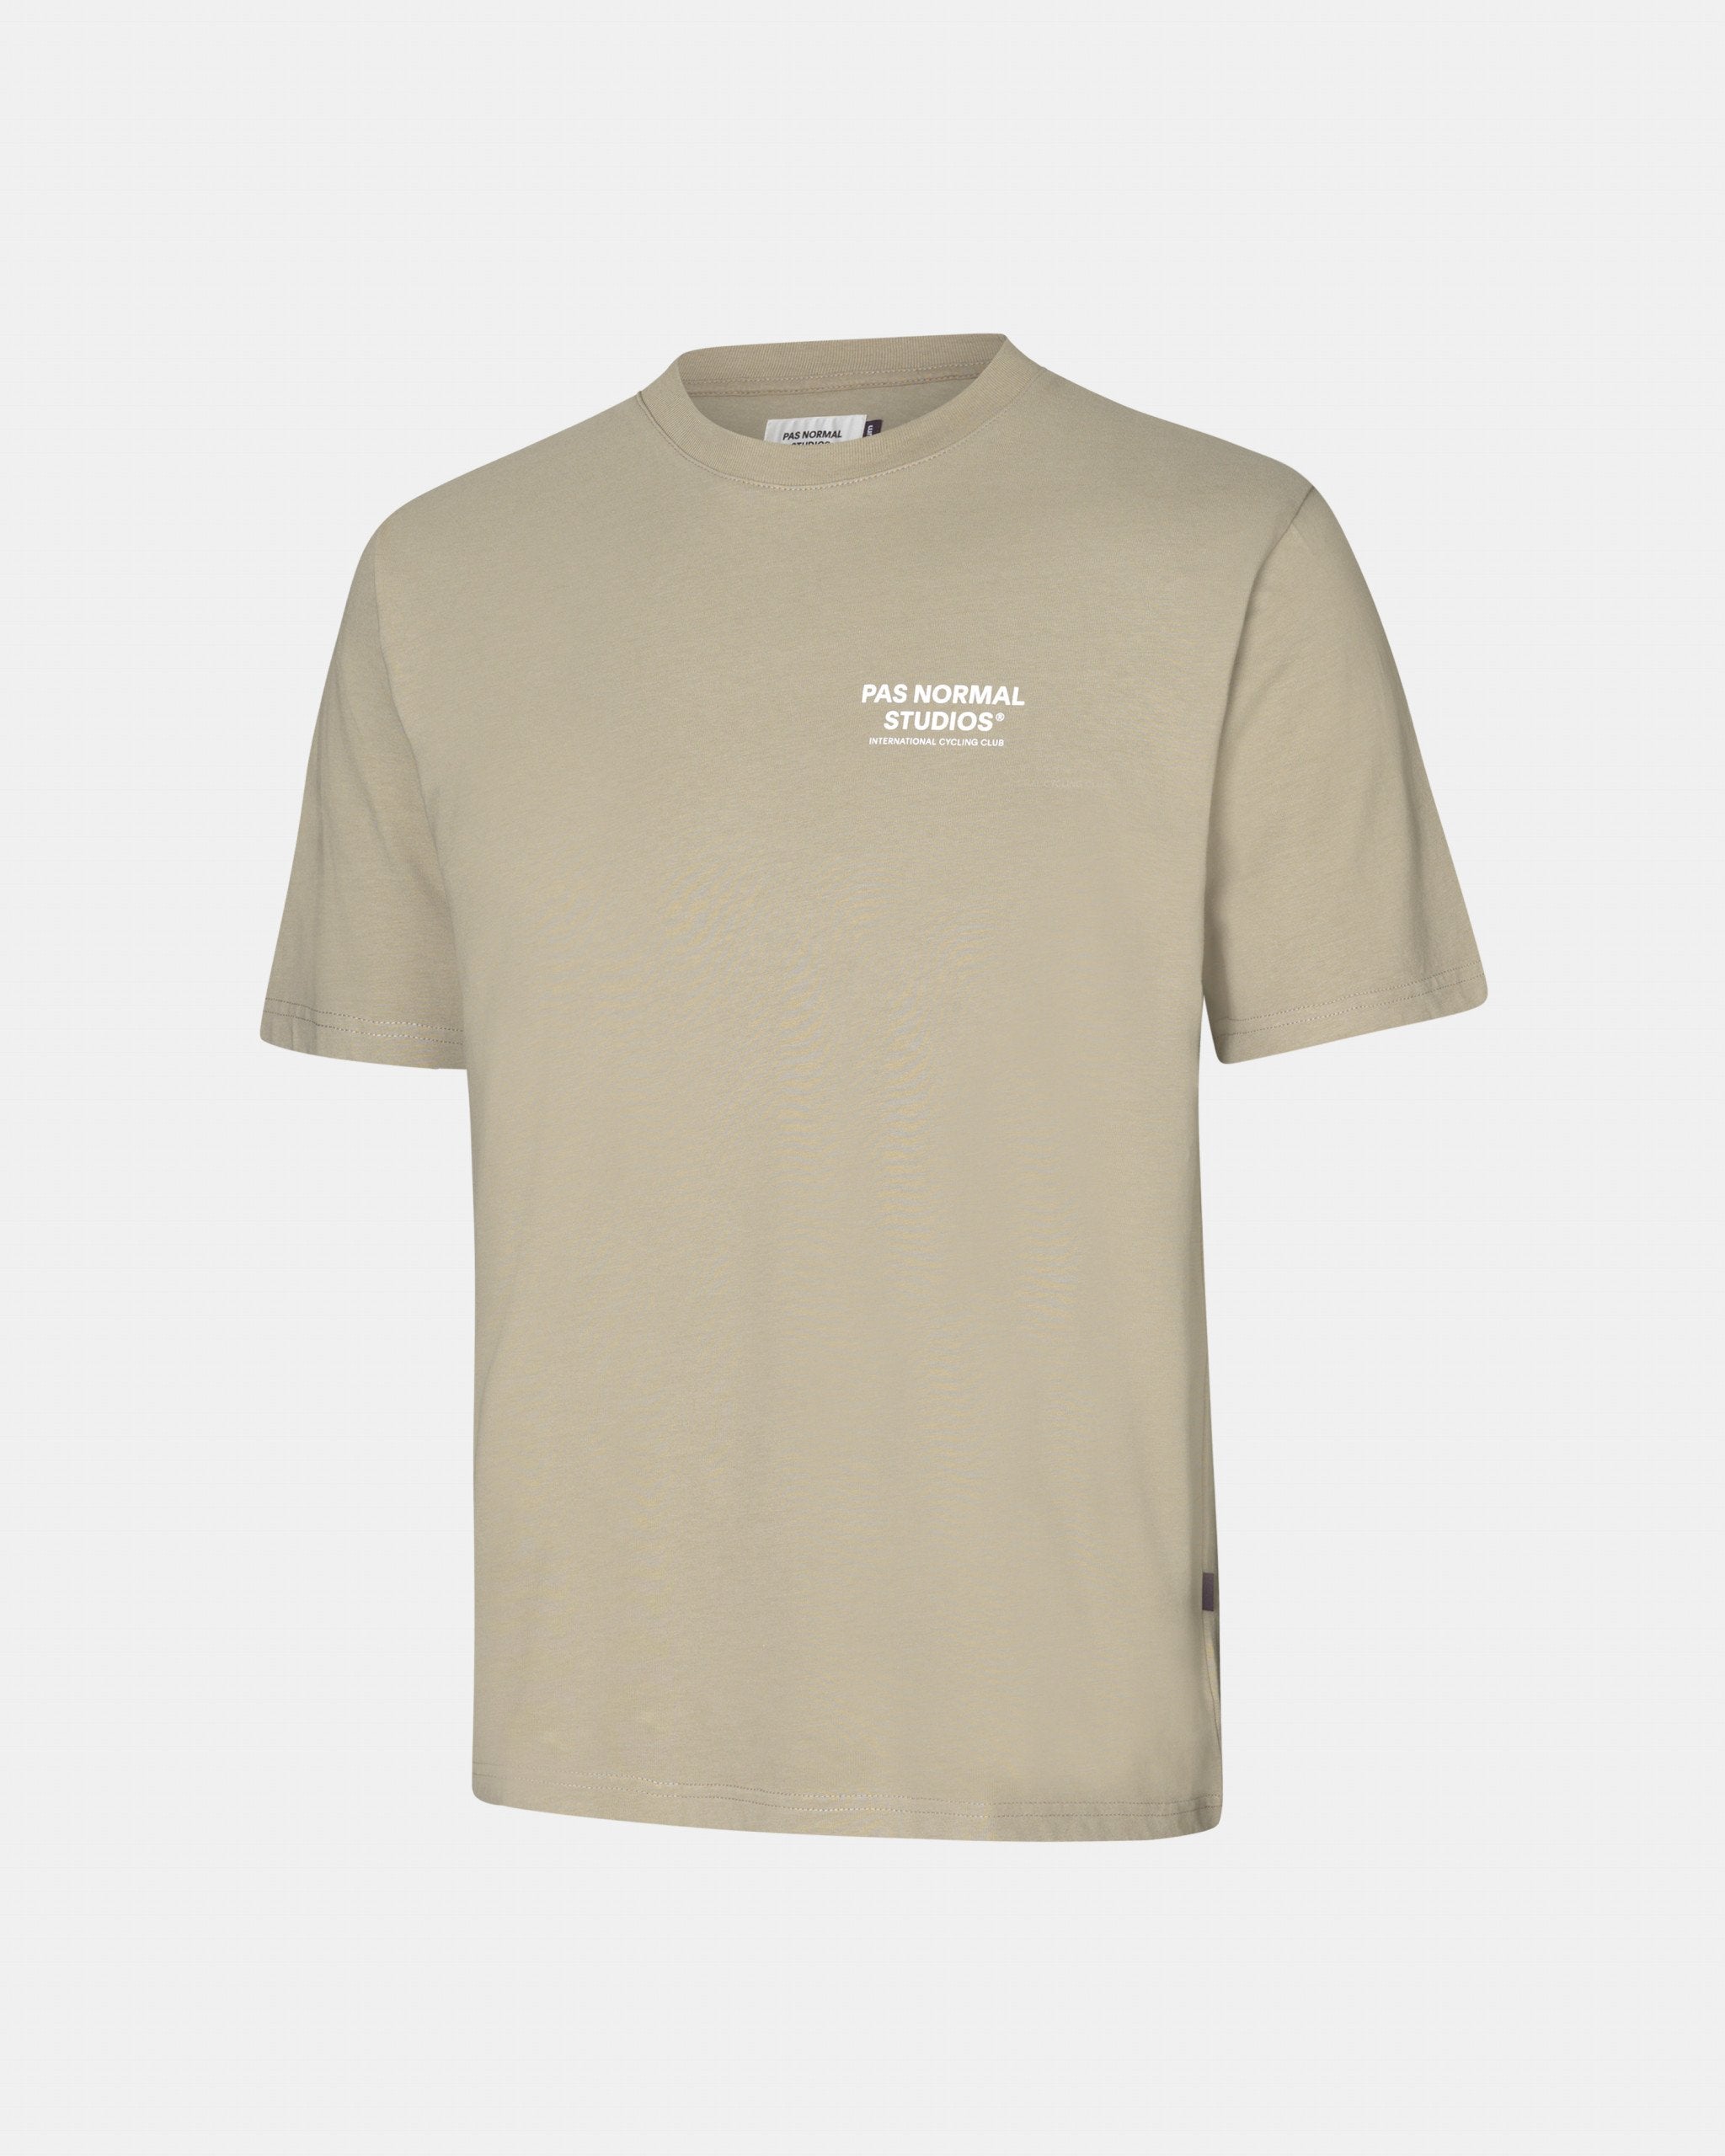 Off-Race PNS T-Shirt - Beige